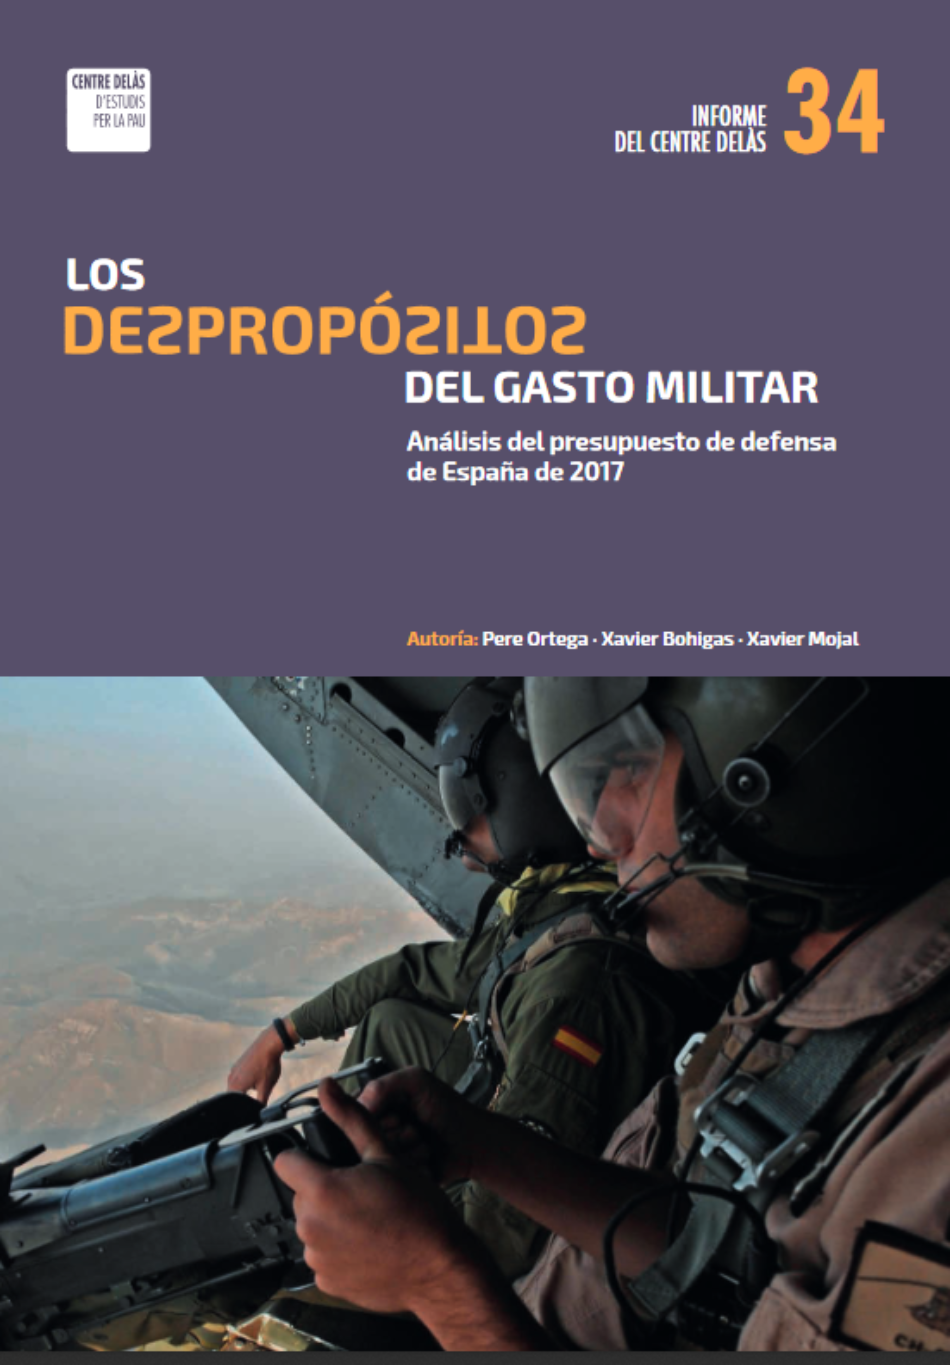 El gasto militar español asciende ya a 18.776 millones de euros, un 1,64% del PIB